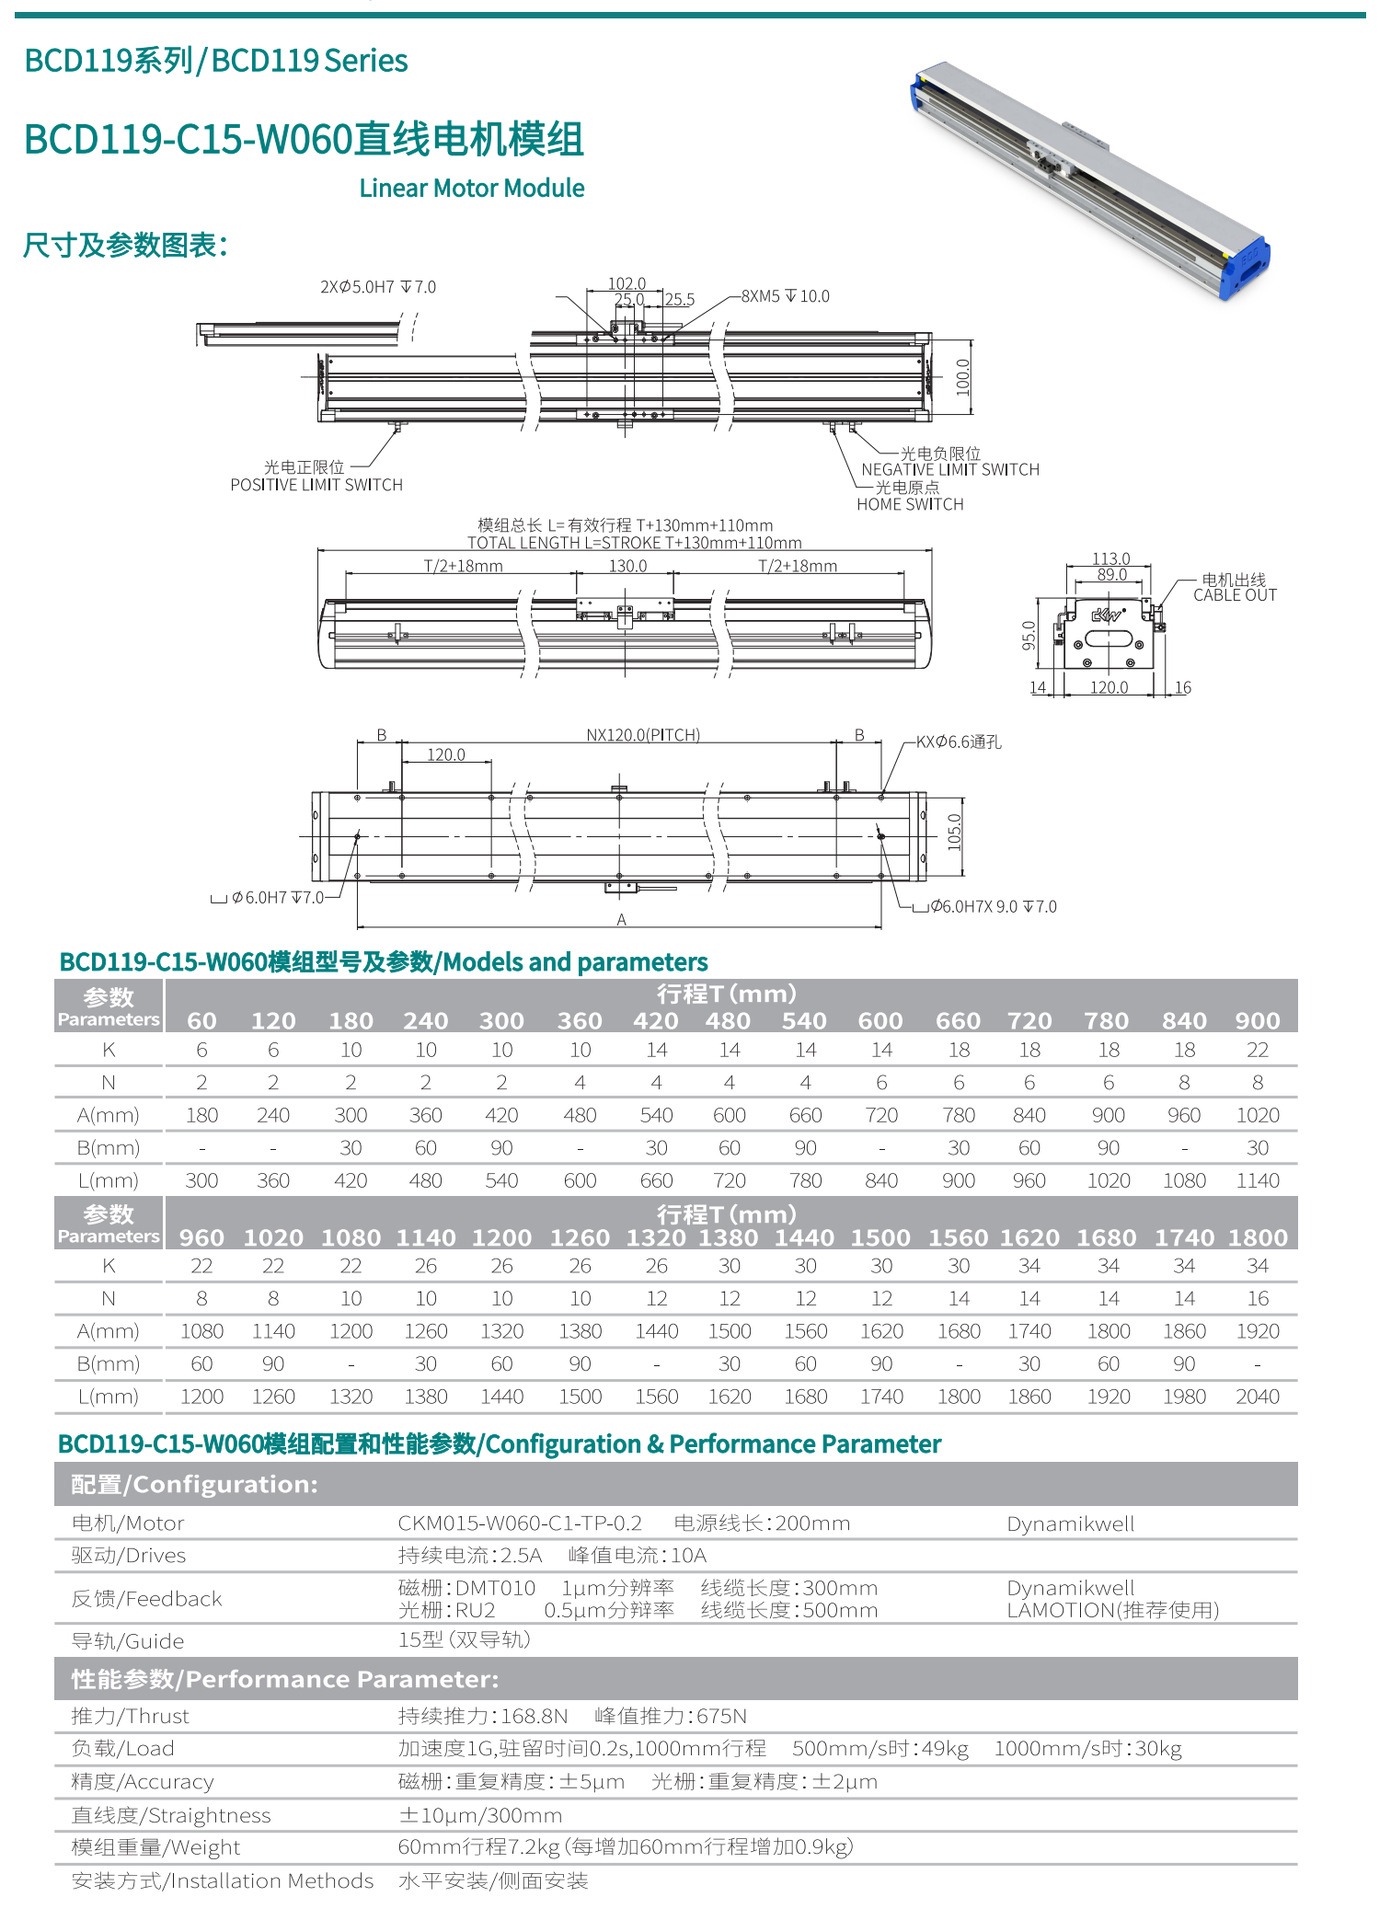 直线电机模组BCD119-C15-W060